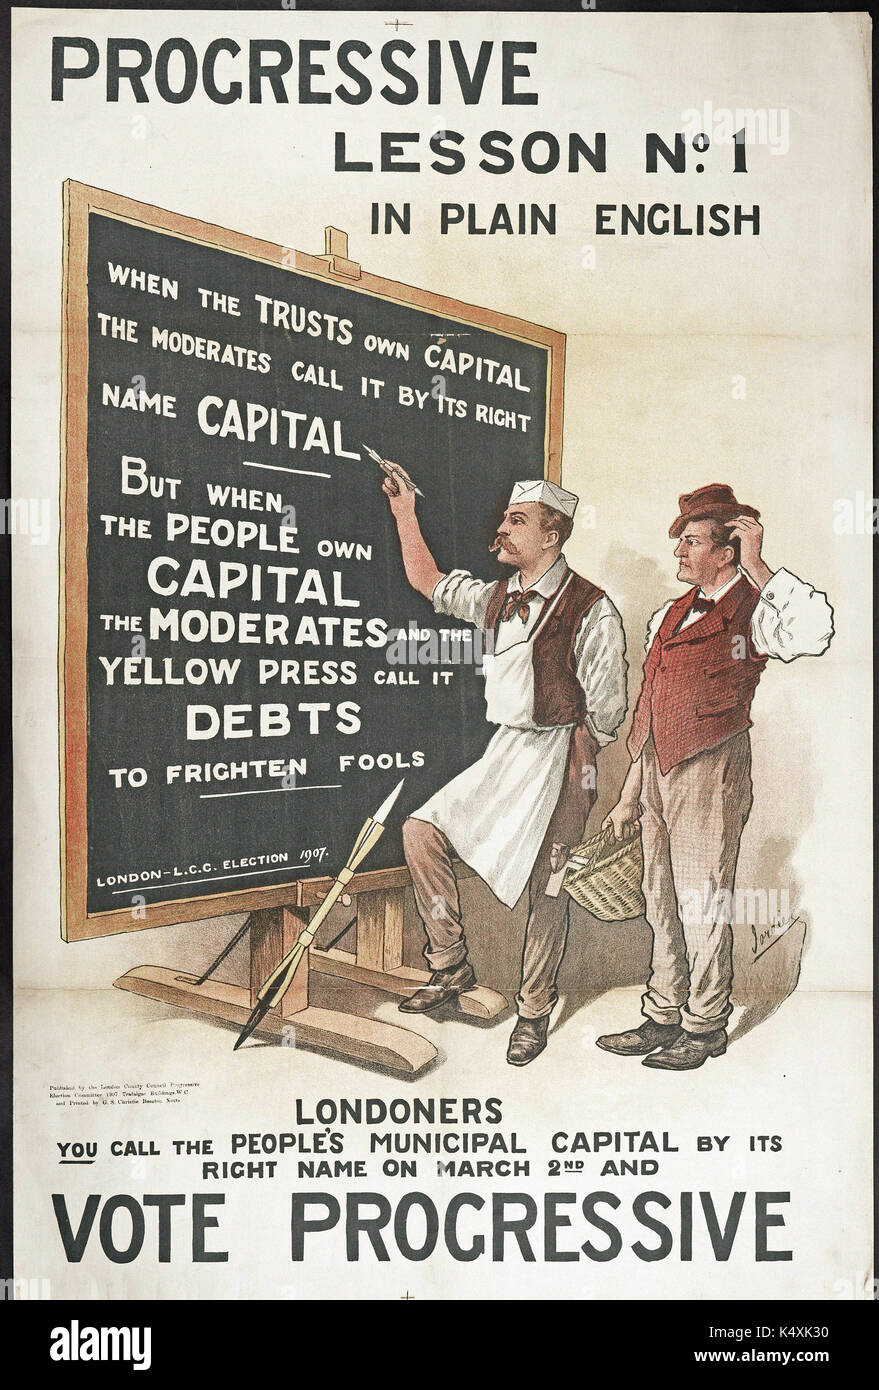 Lezione progressiva n. 1 in inglese semplice - London County Council elezioni, 1907 Foto Stock